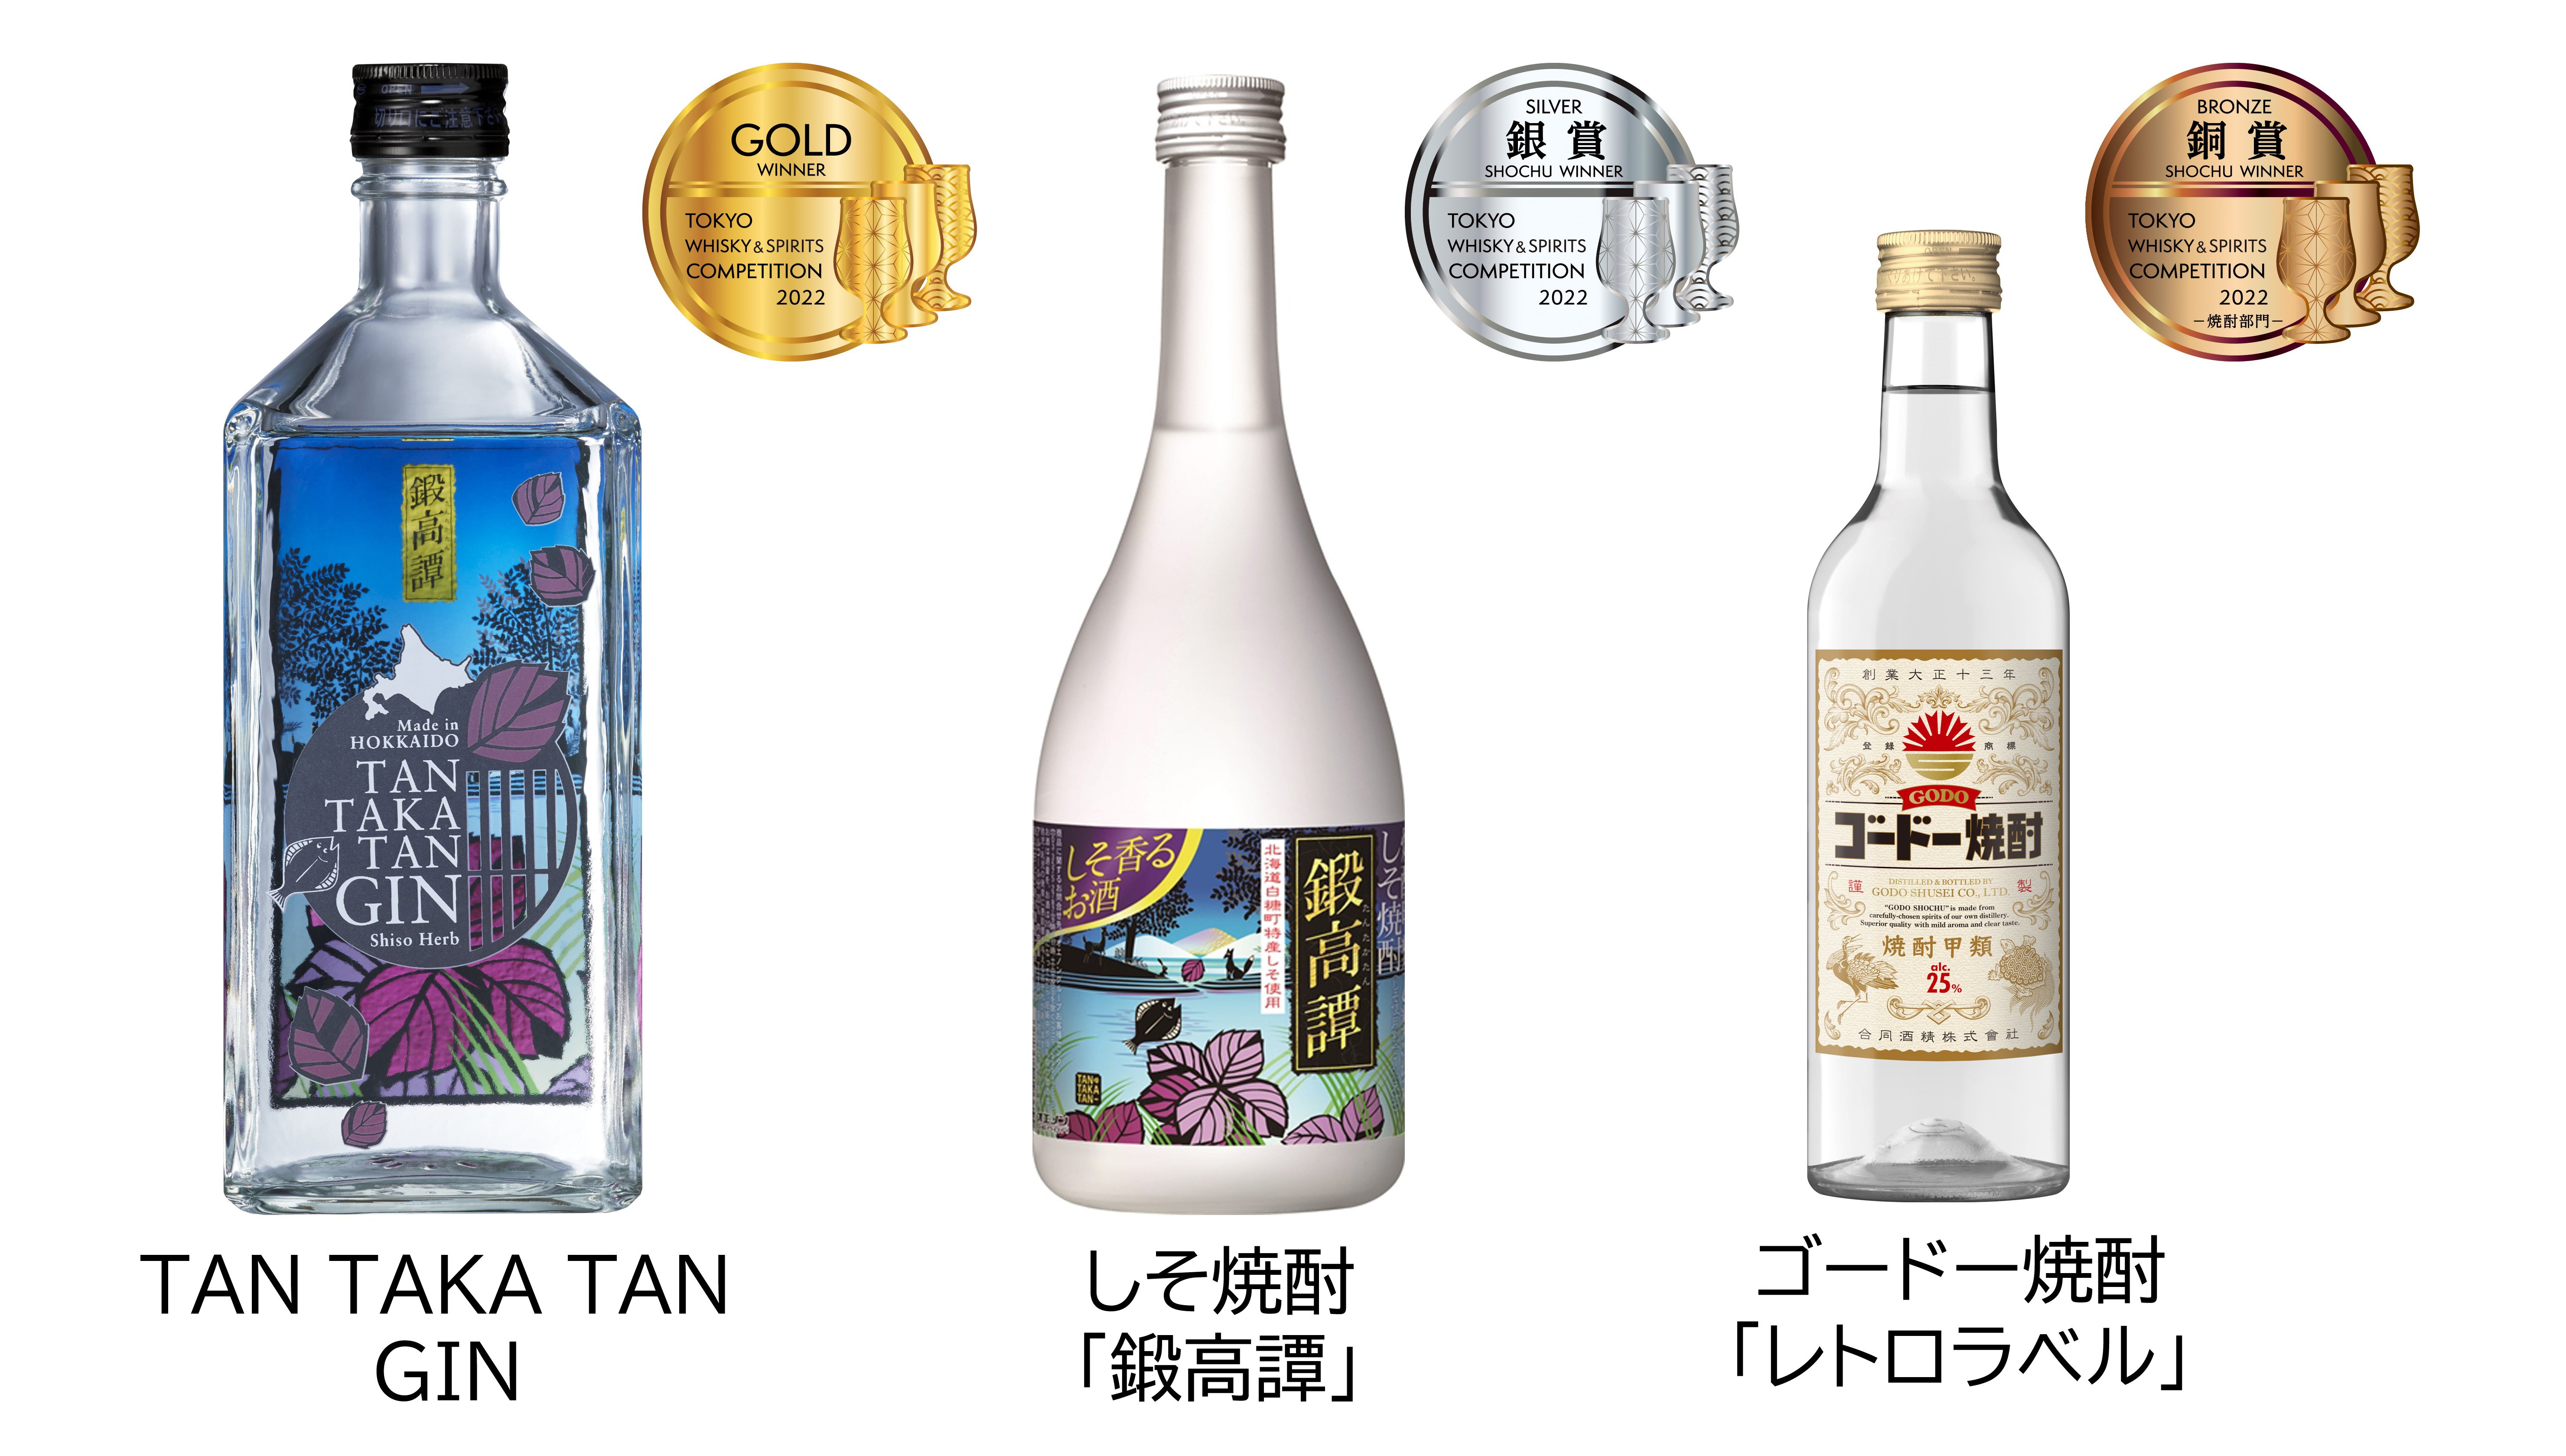 TAN TAKA TAN GIN」が「東京ウイスキー&スピリッツコンペティション